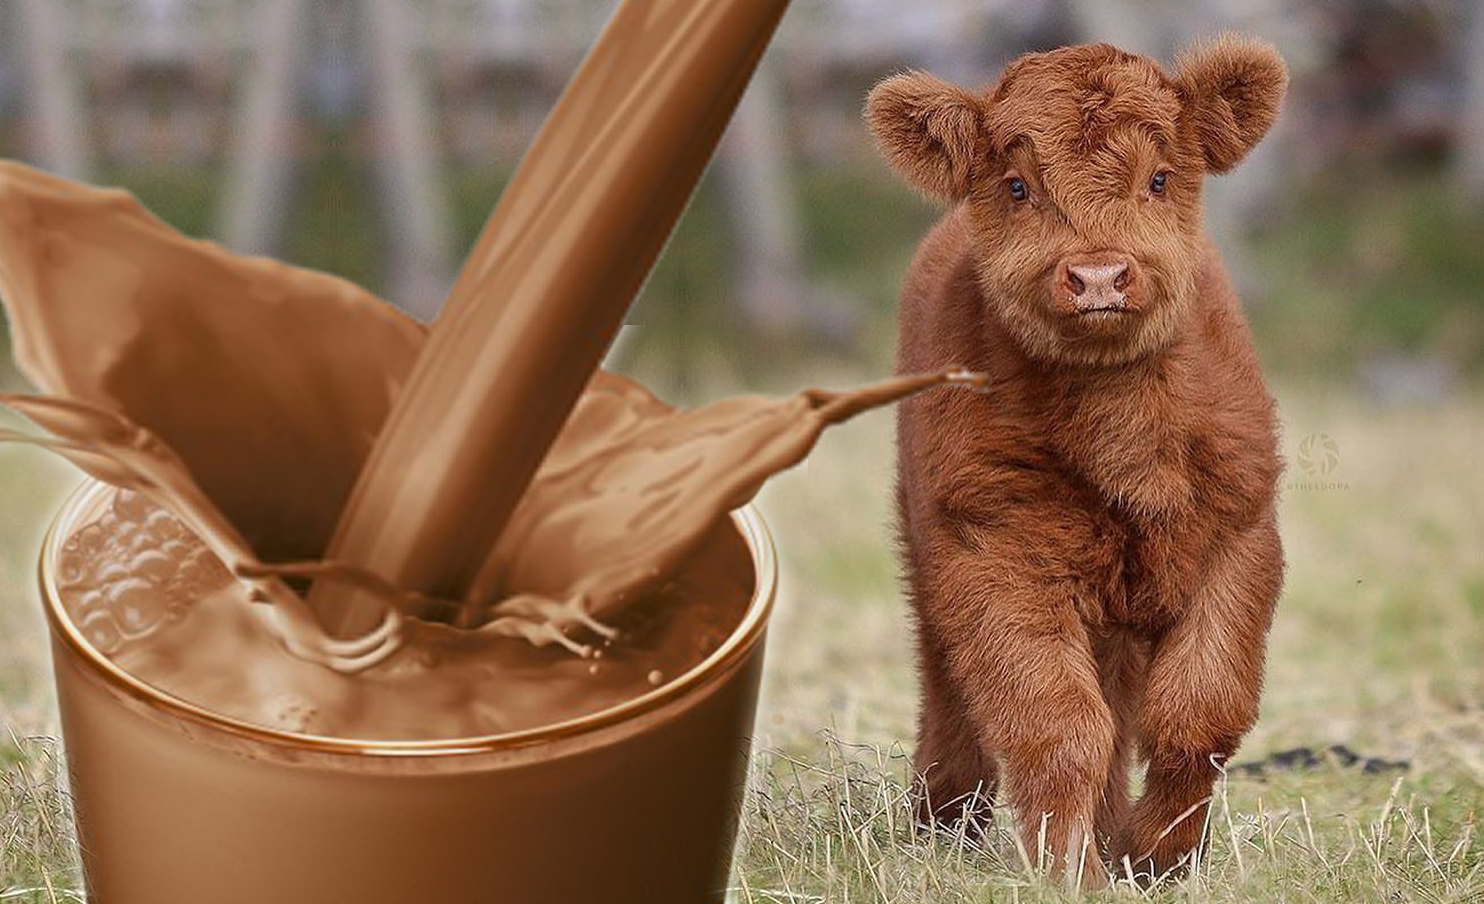 estudo aponta que norte-americanos acham que vaca marrom da leite achocolatado